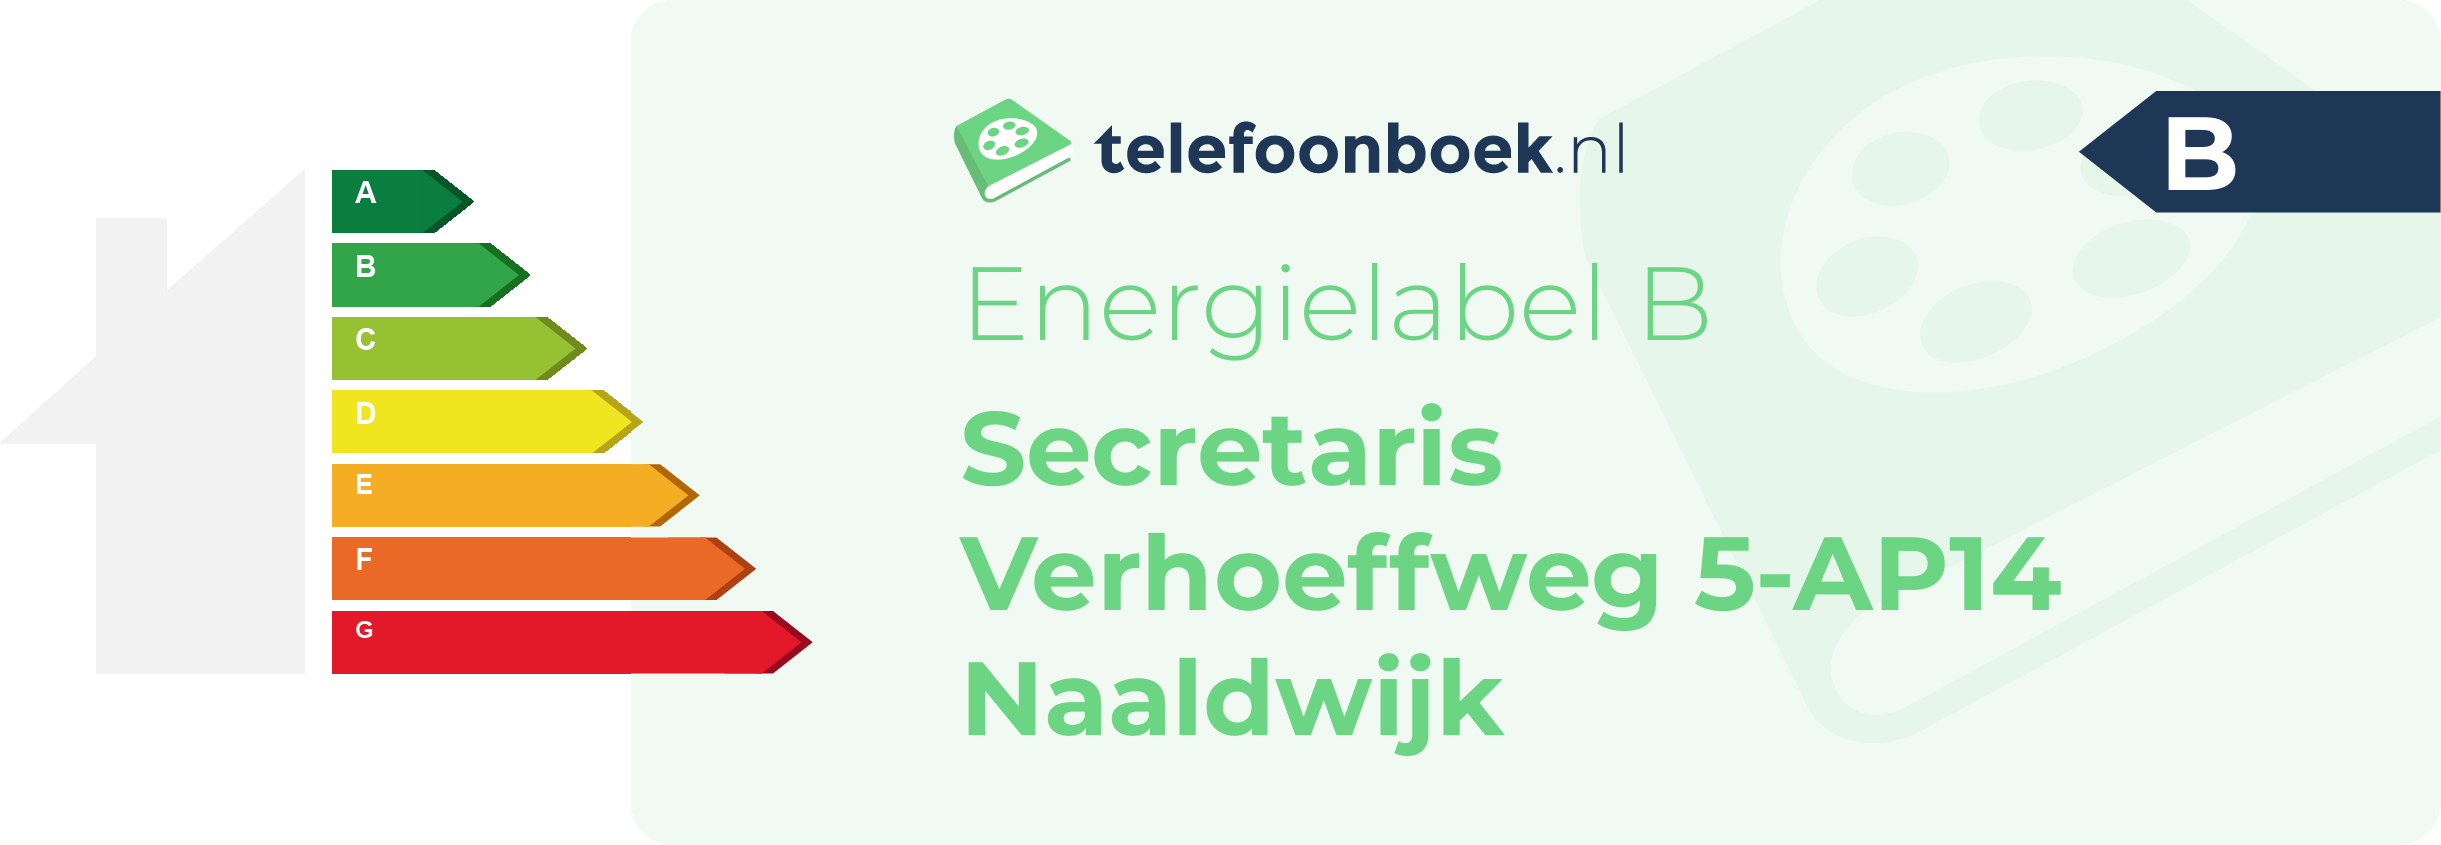 Energielabel Secretaris Verhoeffweg 5-AP14 Naaldwijk